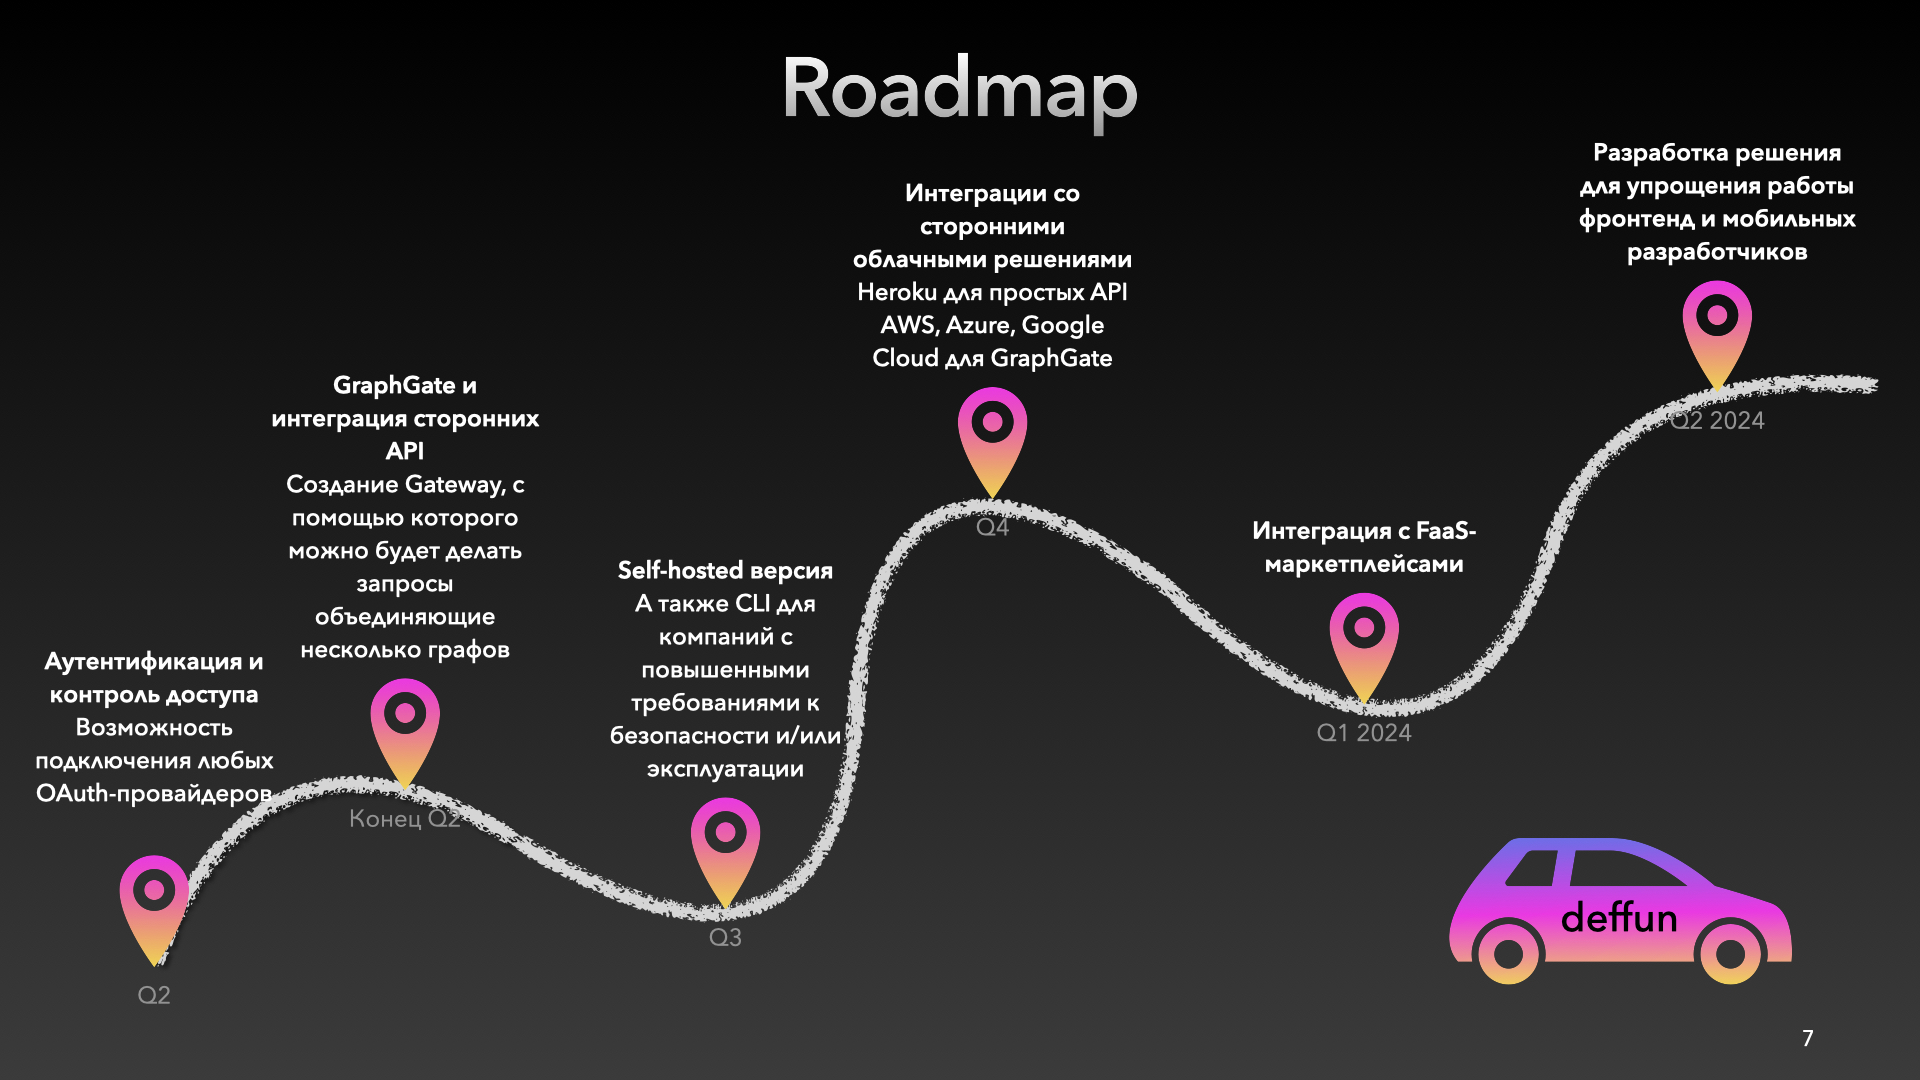 *пример roadmap в стартапе